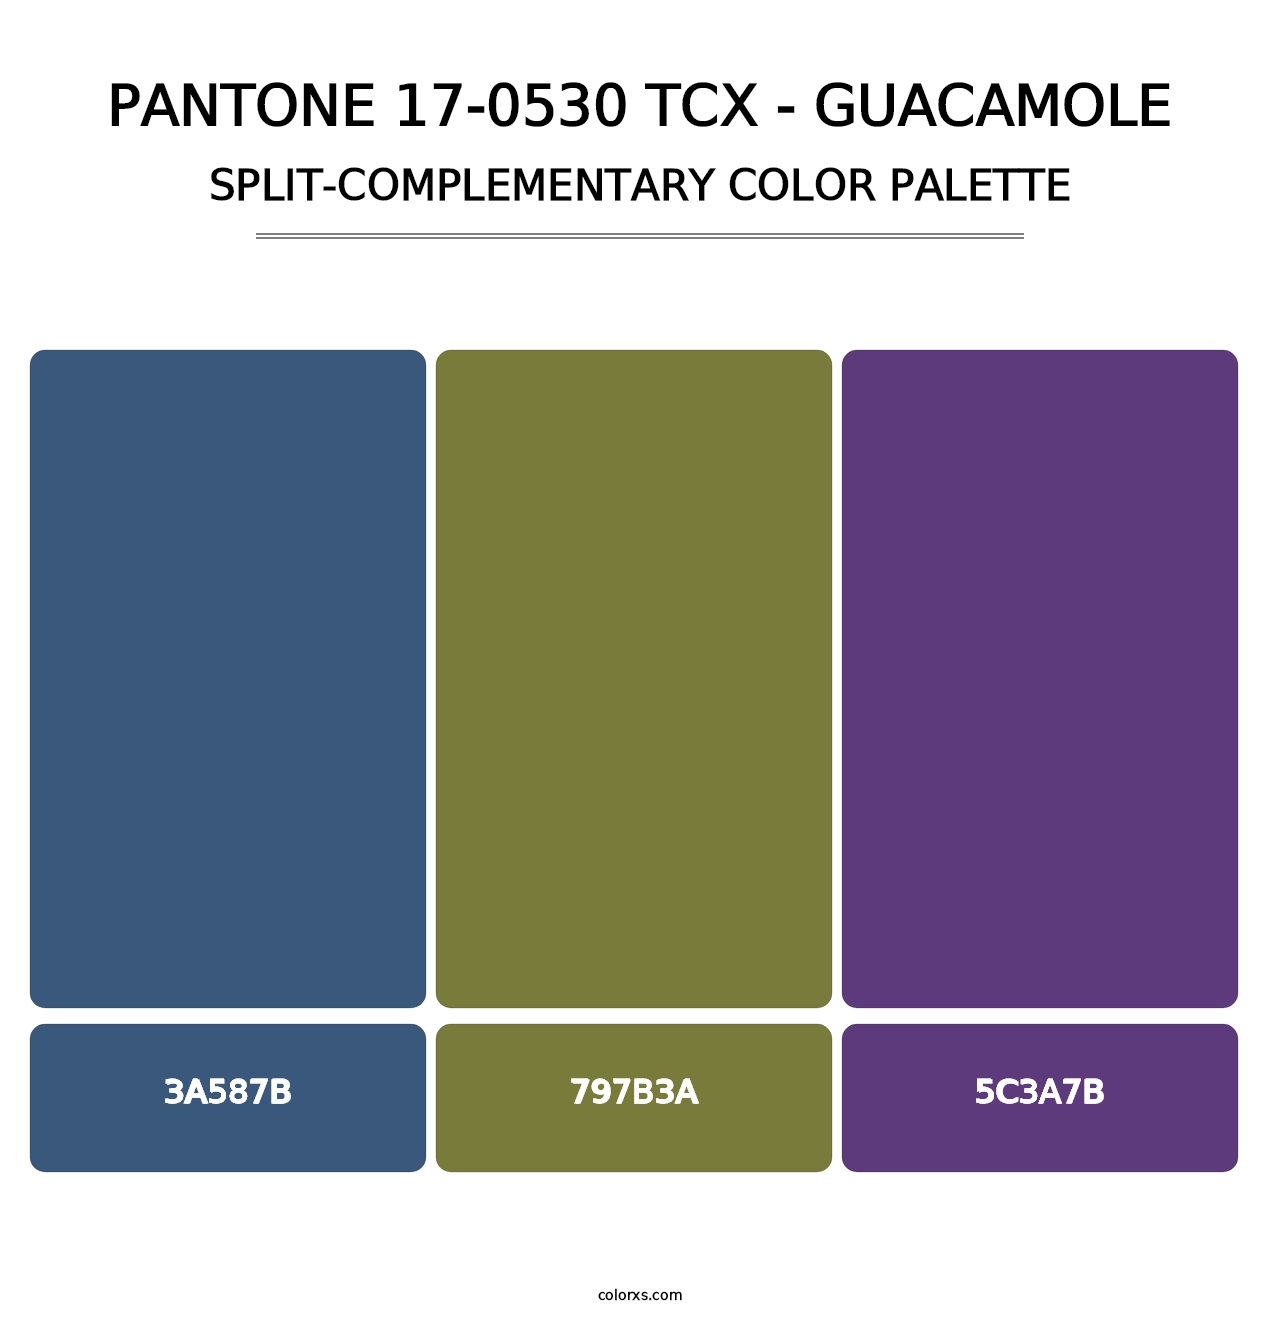 PANTONE 17-0530 TCX - Guacamole - Split-Complementary Color Palette